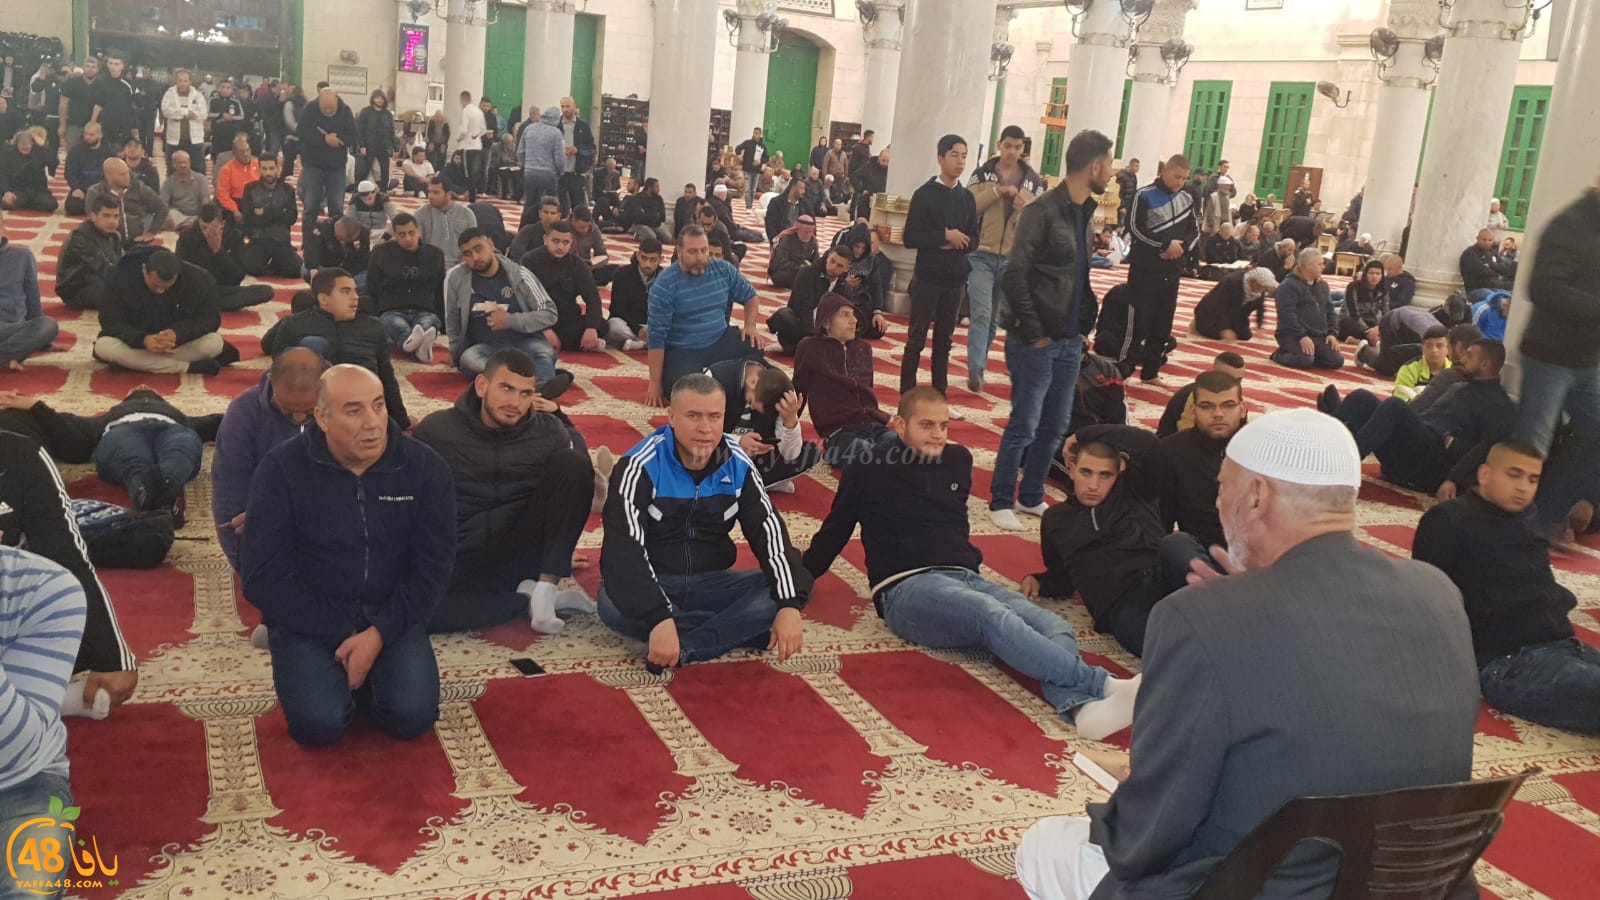  بالصور: شباب من يافا، اللد والرملة يشدون الرحال للمسجد الأقصى المبارك 